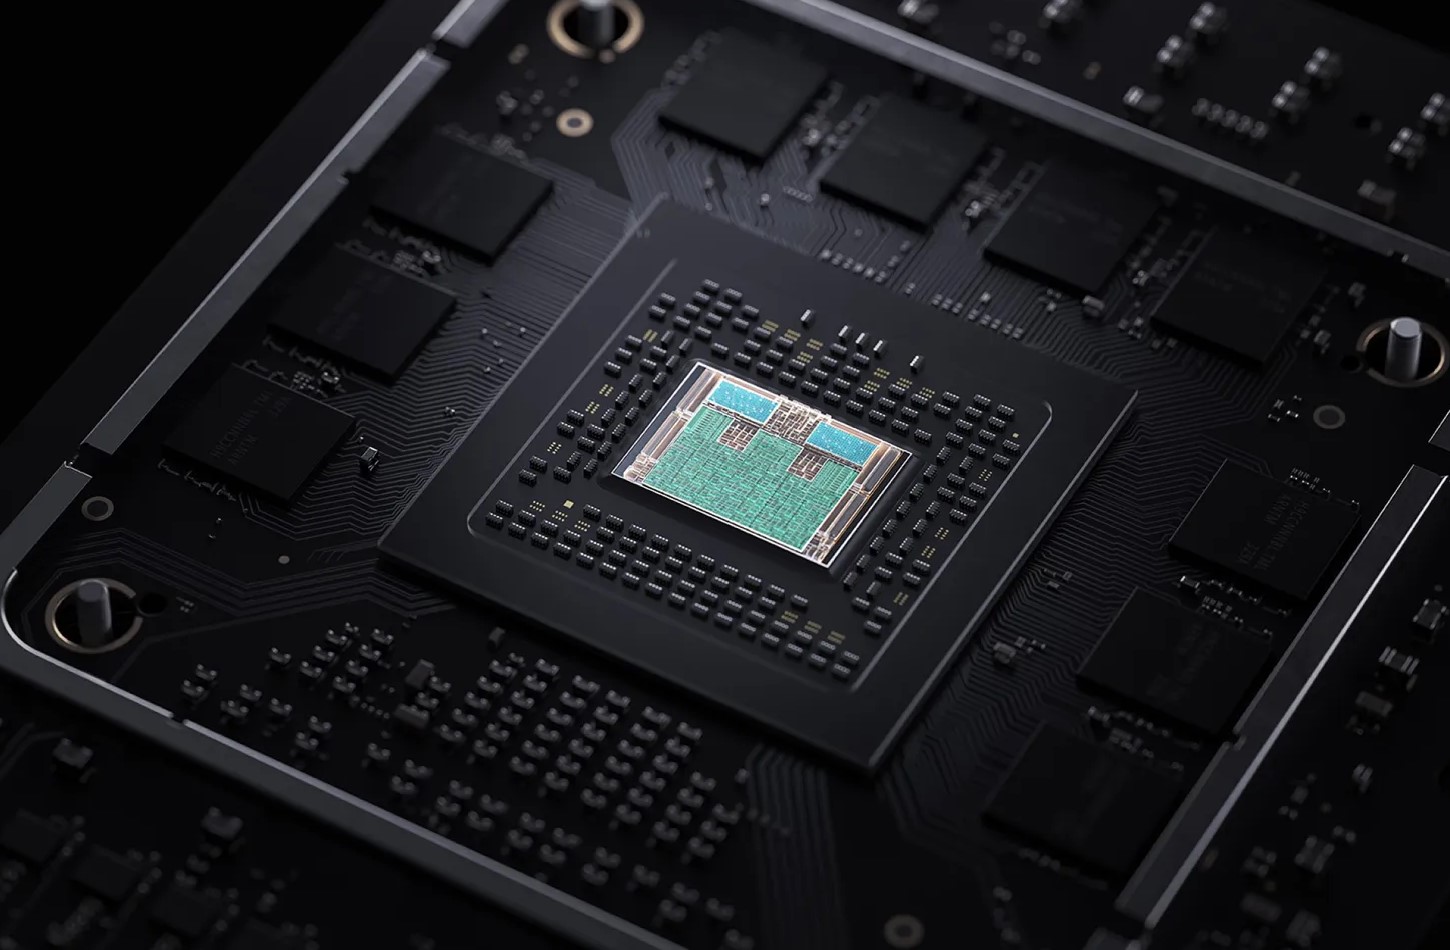 Thừa khả năng, nhưng
tại sao Intel và AMD không sản xuất chip như M2 Max và M2
Ultra